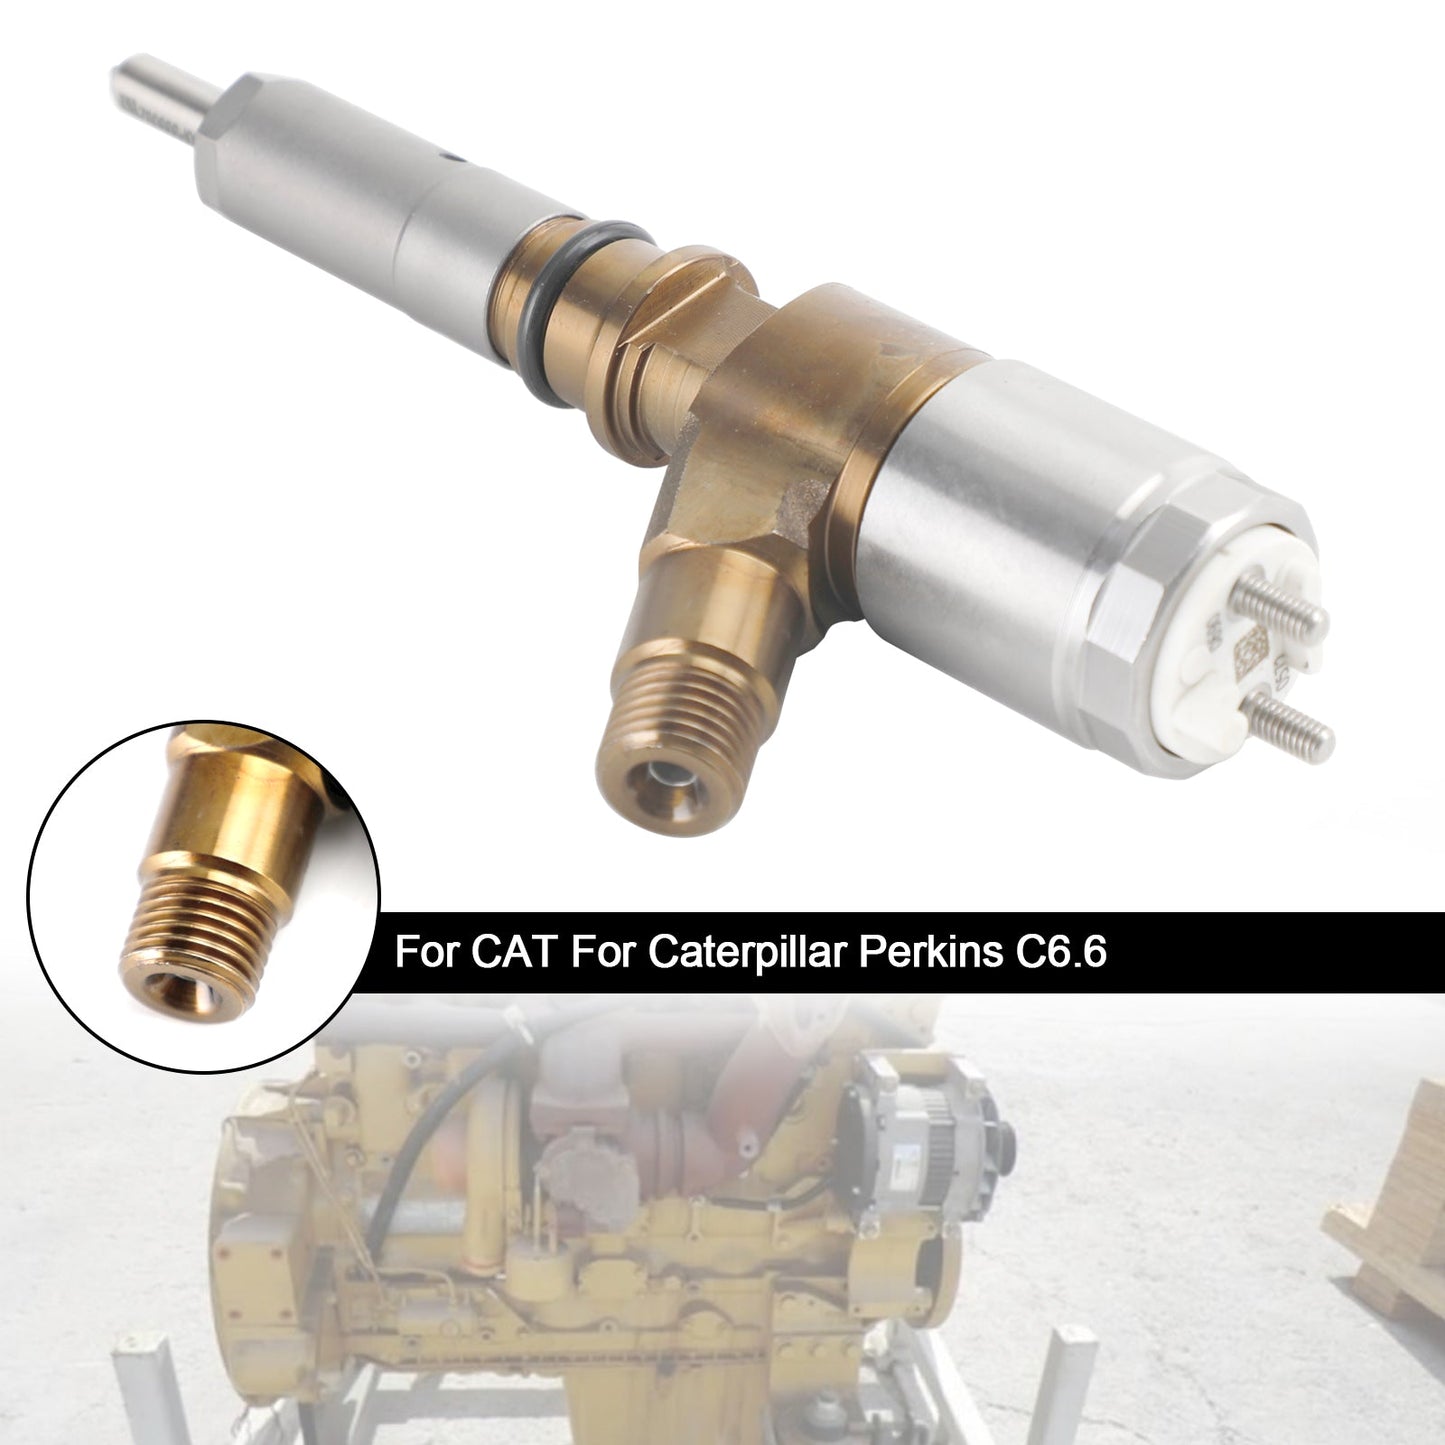 1PS Kraftstoffeinspritzer 2645A749 Passend für Caterpillar Perkins C6.6 Passend für CAT 320-0690